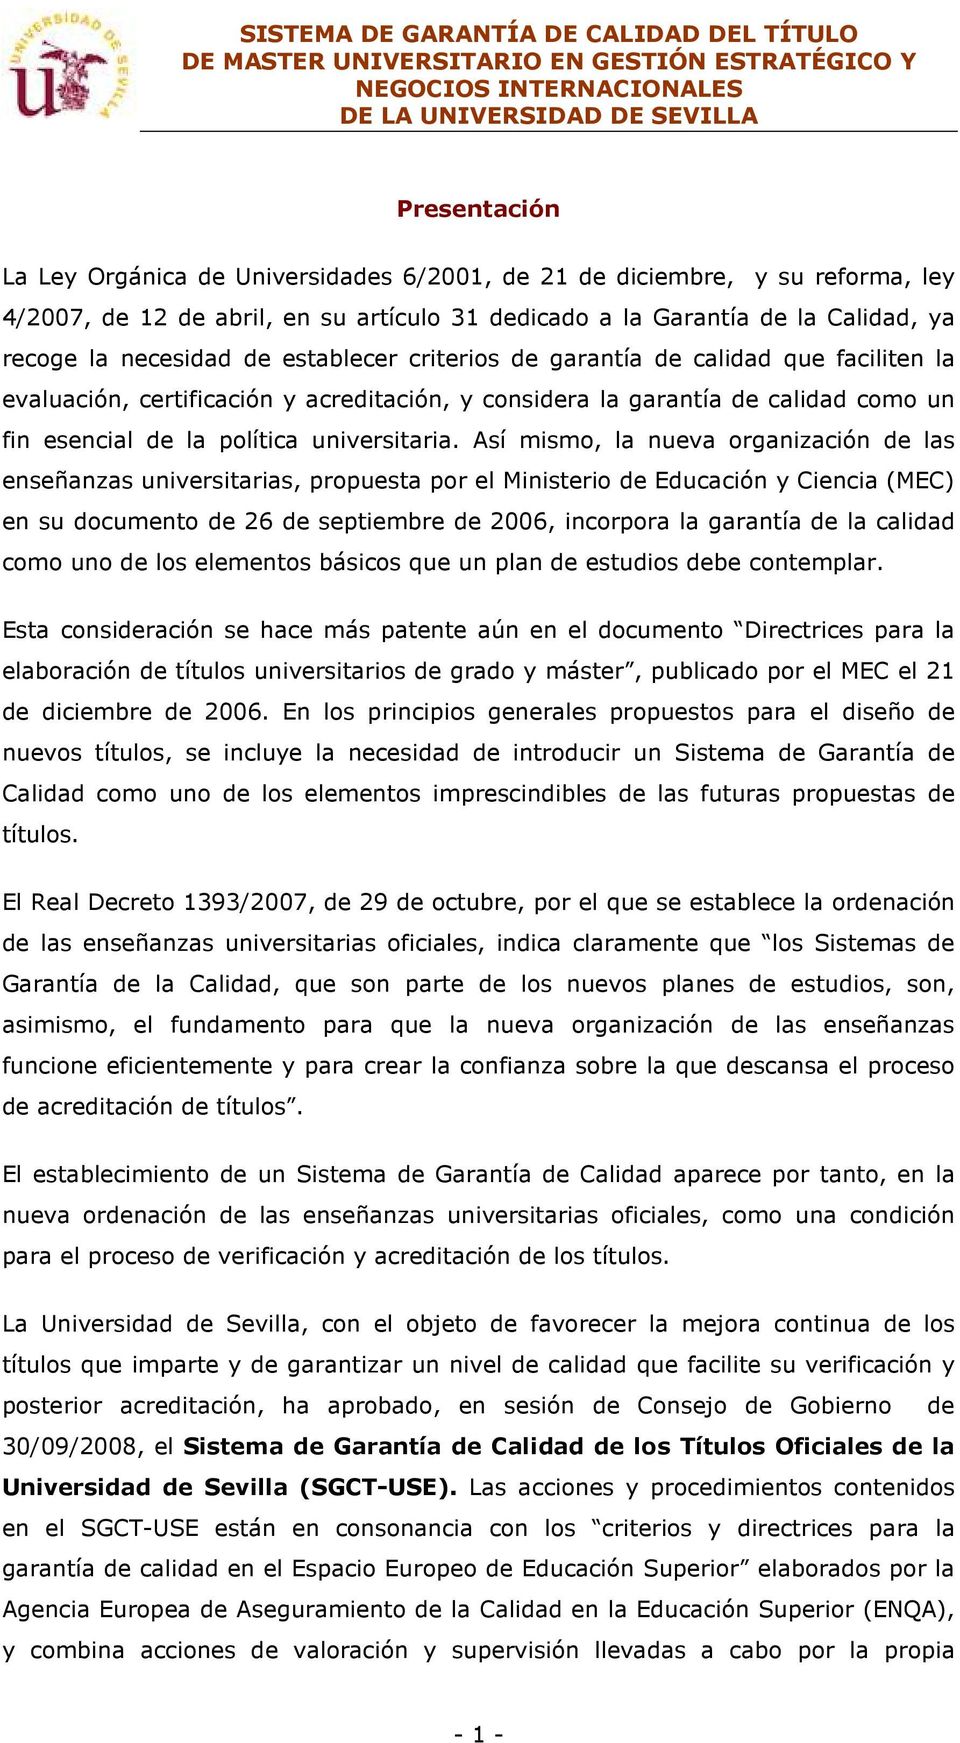 Así mismo, la nueva organización de las enseñanzas universitarias, propuesta por el Ministerio de Educación y Ciencia (MEC) en su documento de 26 de septiembre de 2006, incorpora la garantía de la